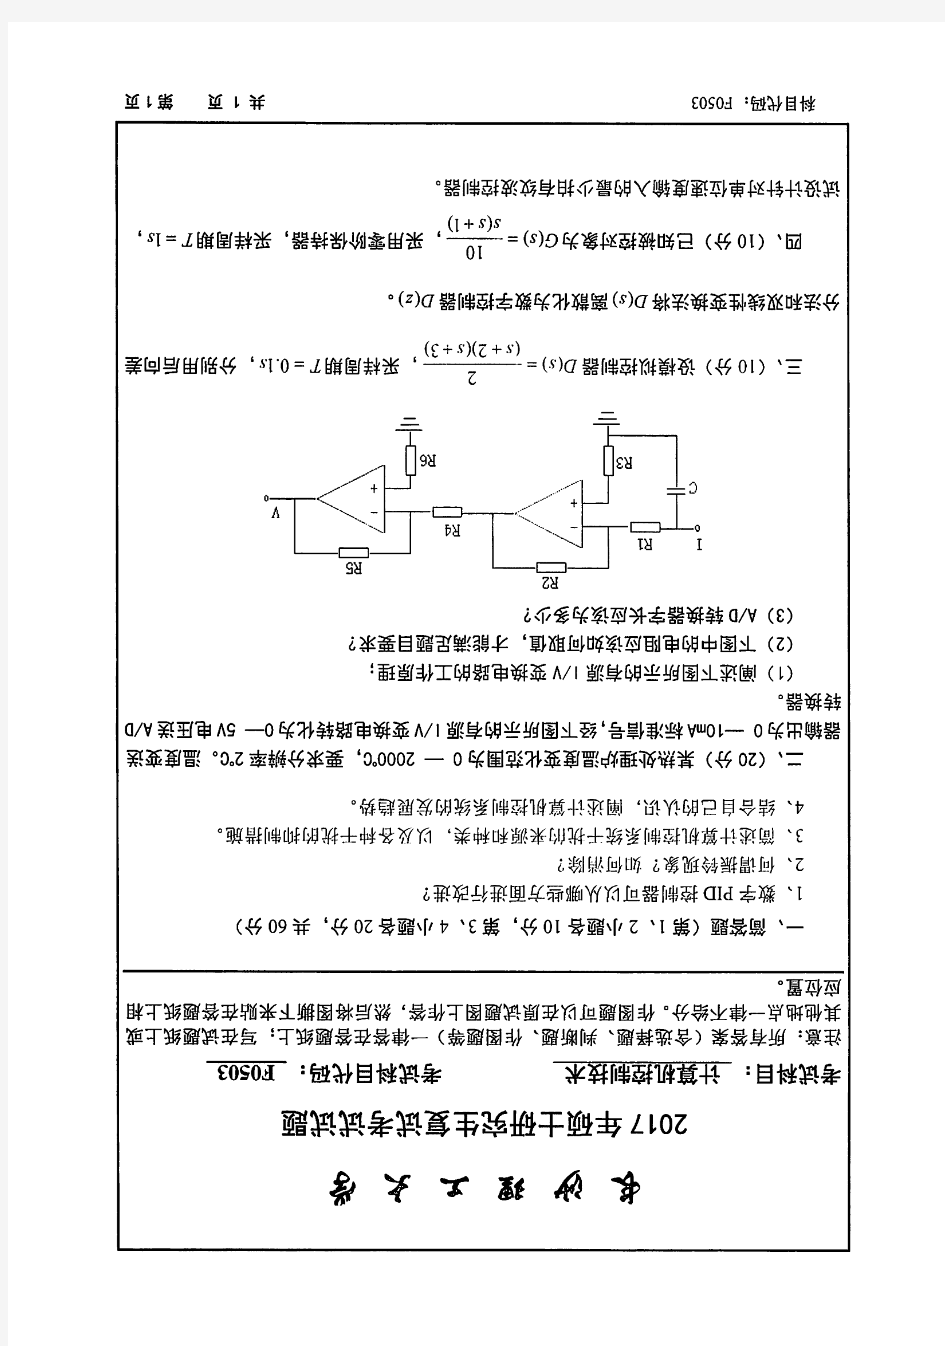 长沙理工大学F0503计算机控制技术(2016-2020年)- 电气学院 复试真题汇编